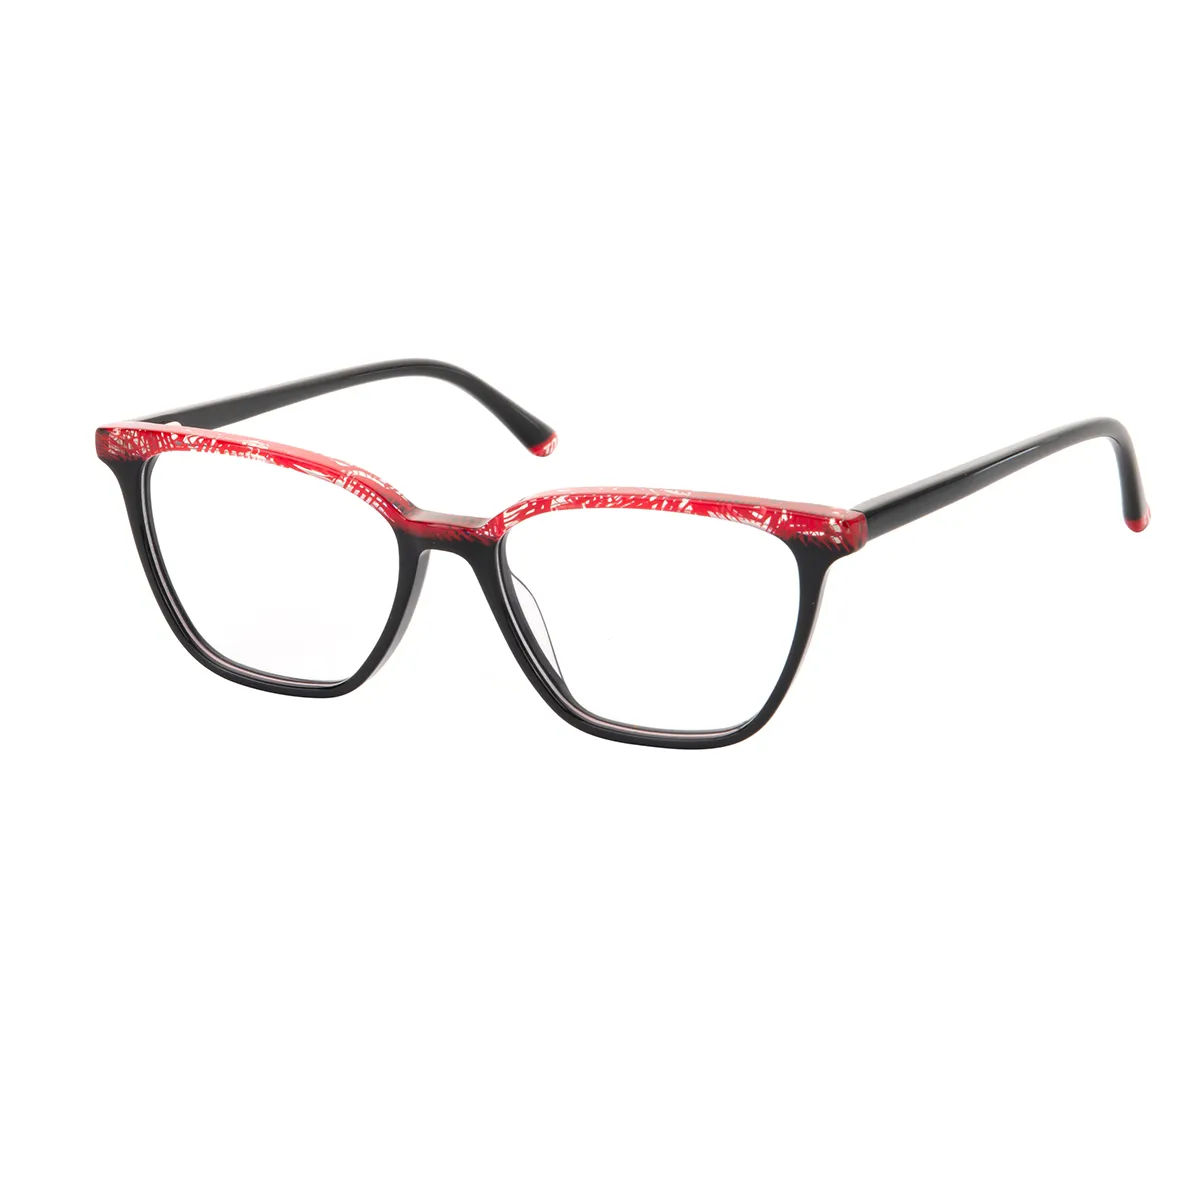 Kary - Cat-eye Black-Red Glasses for Women - EFE